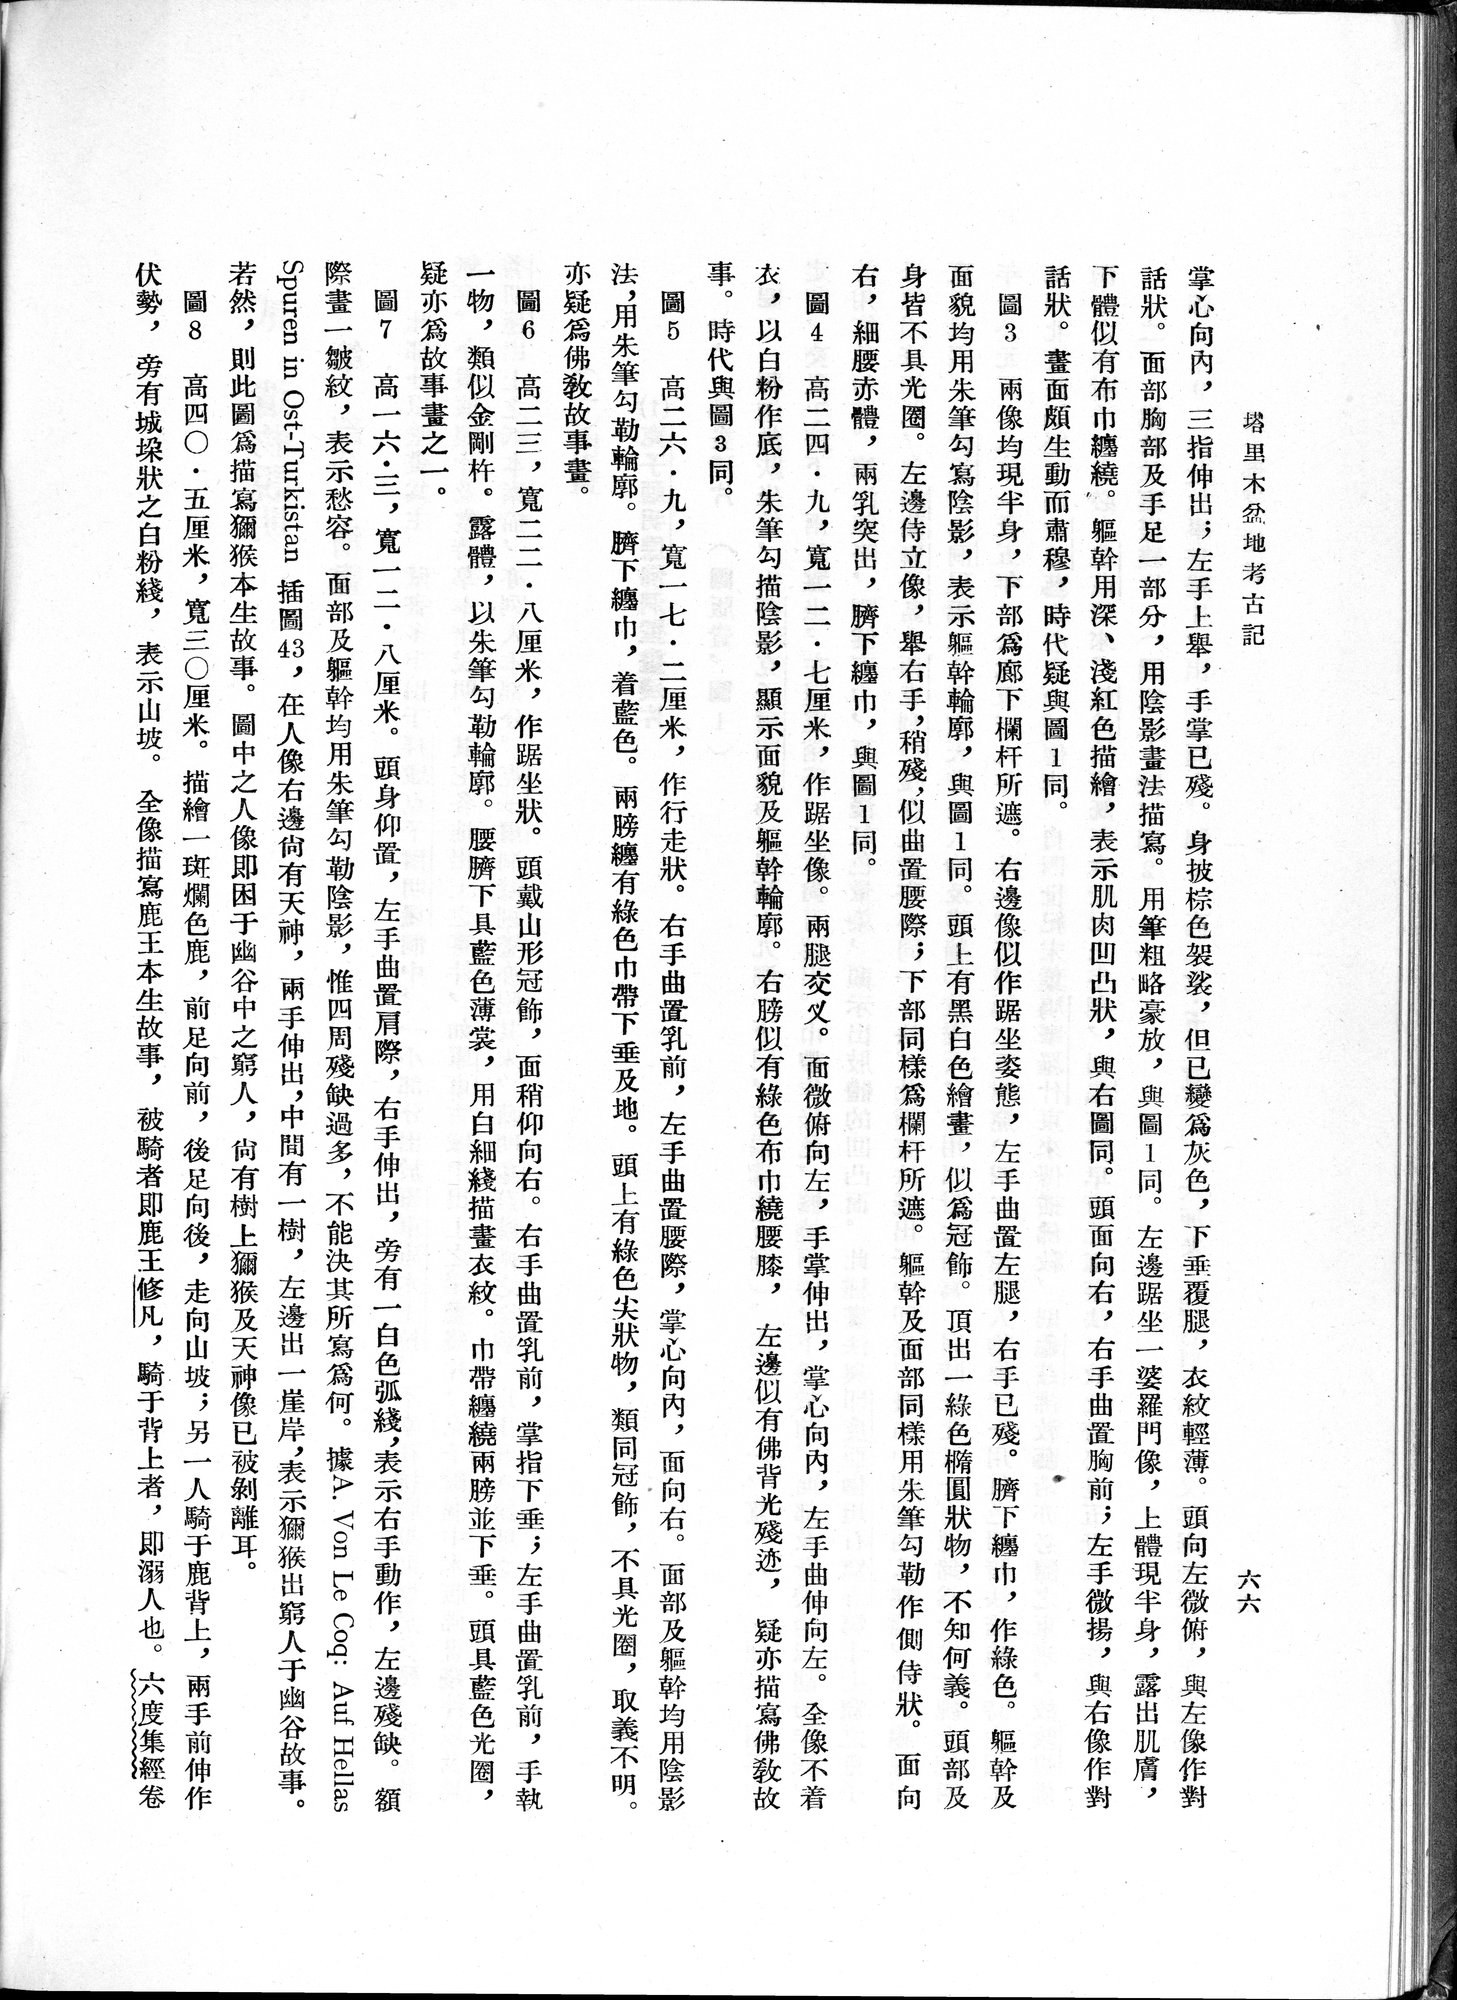 塔里木盆地考古記 : vol.1 / Page 130 (Grayscale High Resolution Image)